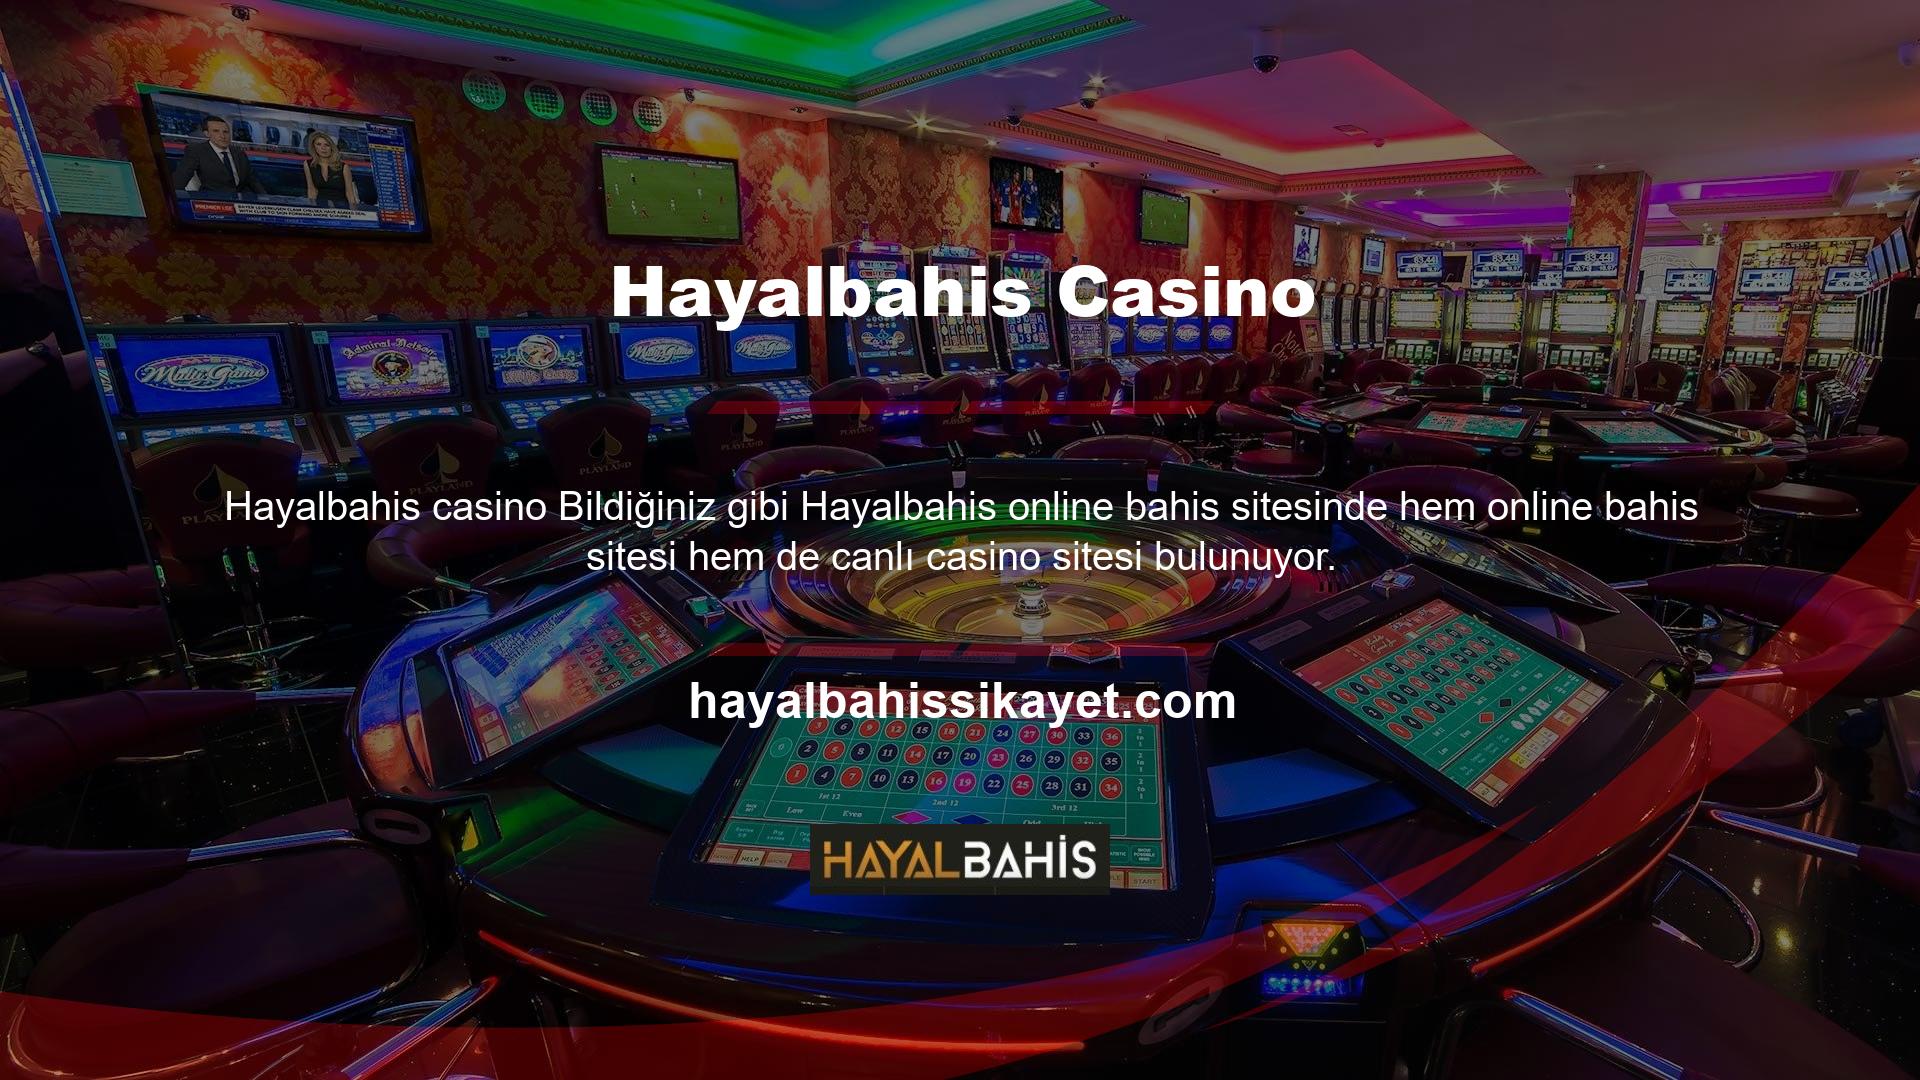 Hayalbahis, kullanıcılarına her iki alanda da benzersiz bir deneyim sunmaya ve yeni adresler üzerinden canlı casino hizmetleri sunmaya devam edecektir